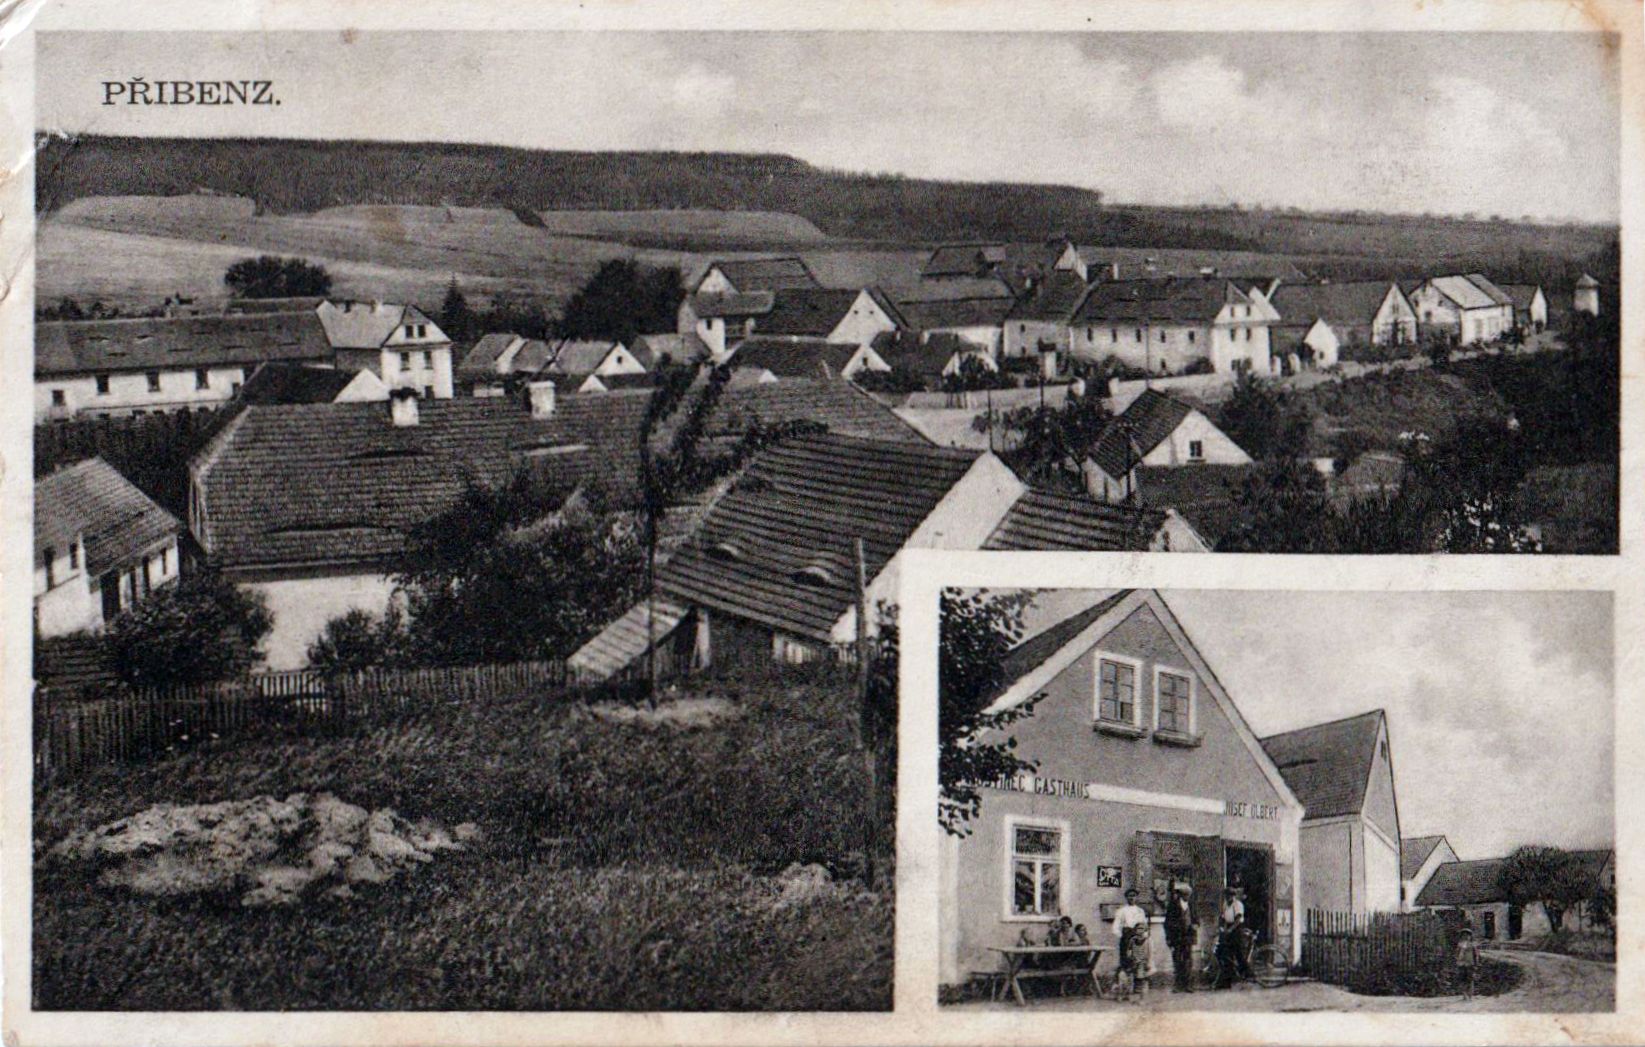 Pohlednice vsi Přibenice - Přibenz, nedatováno - pravděpodobně 30. léta 20. století, zdroj: Richard Kanta